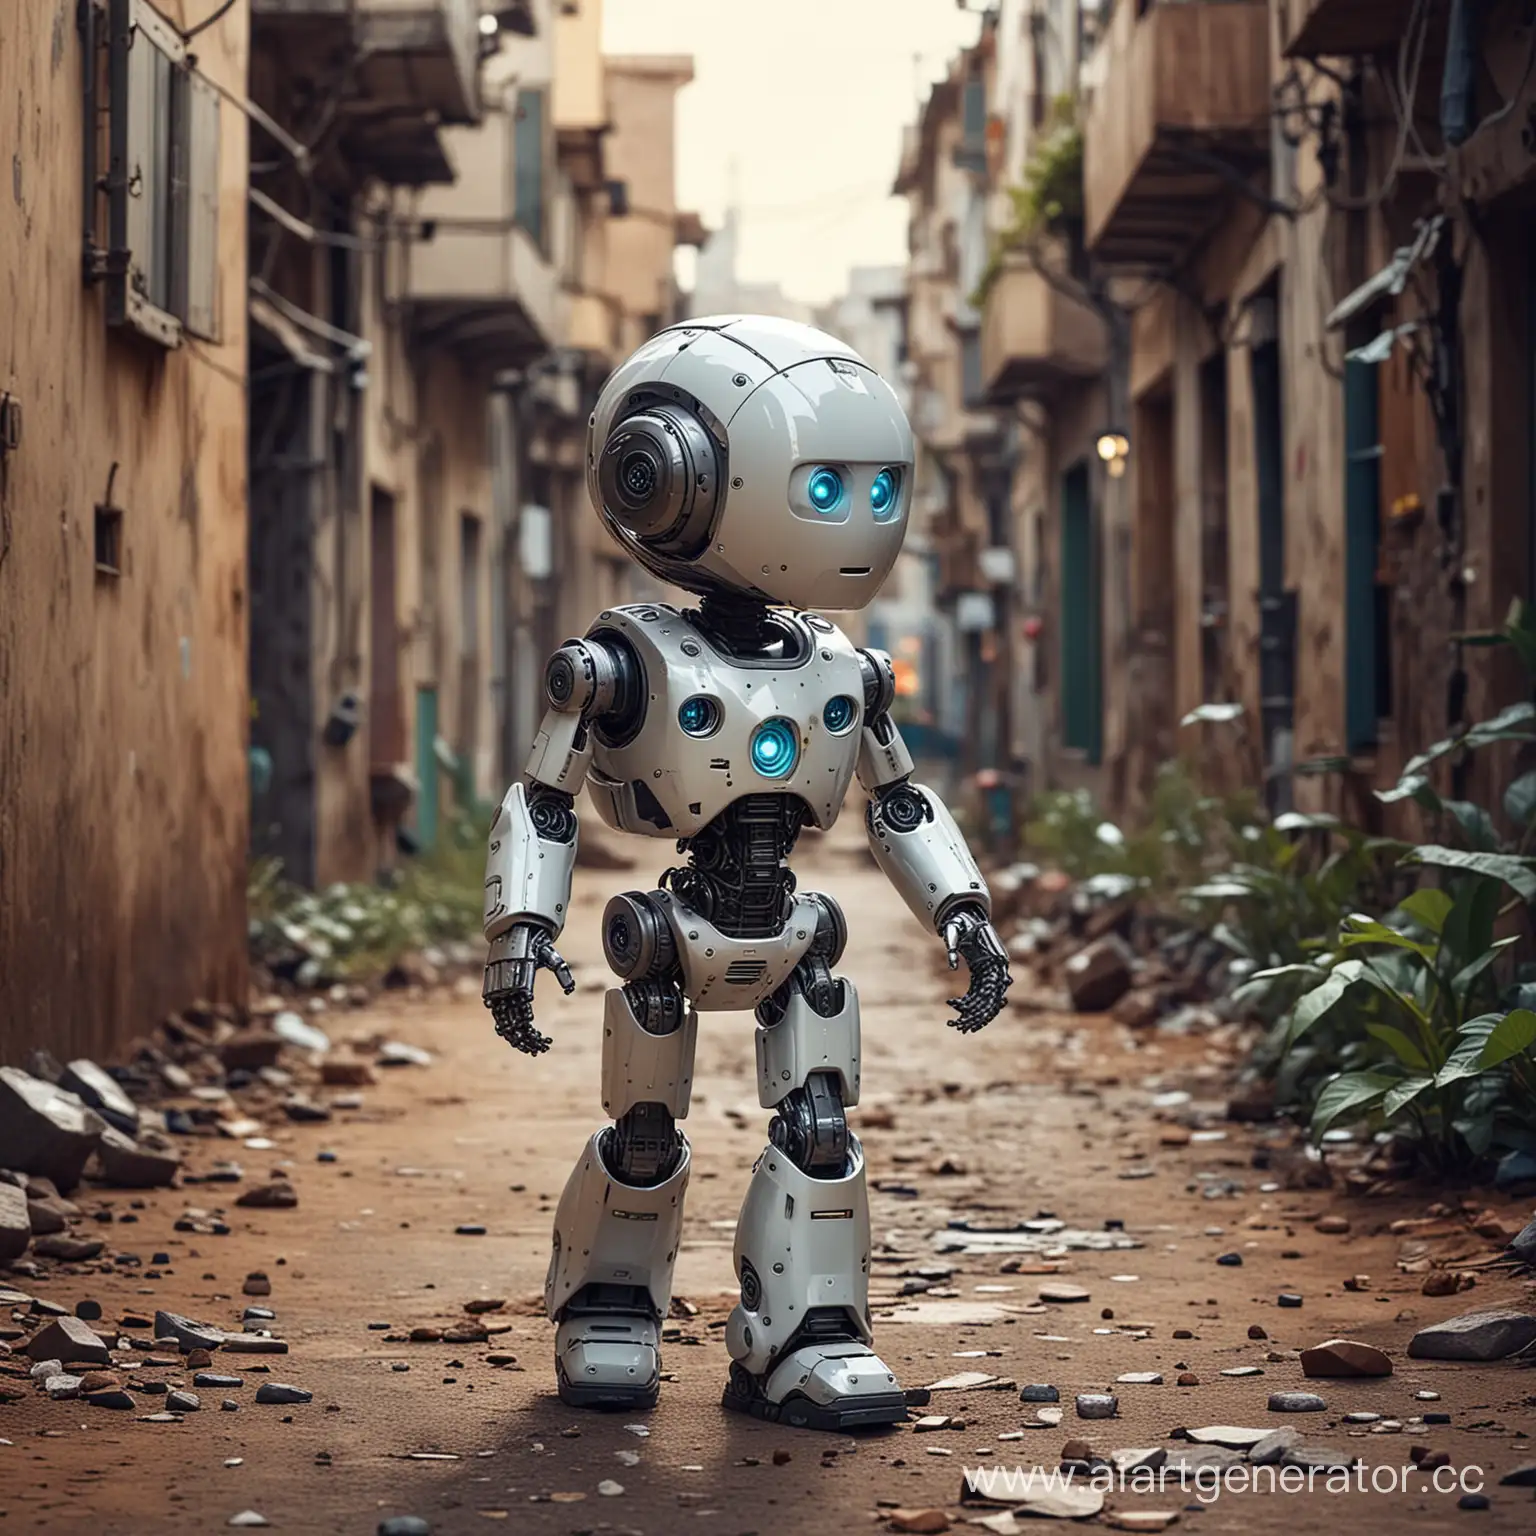 
ребёнок робот изучает мир